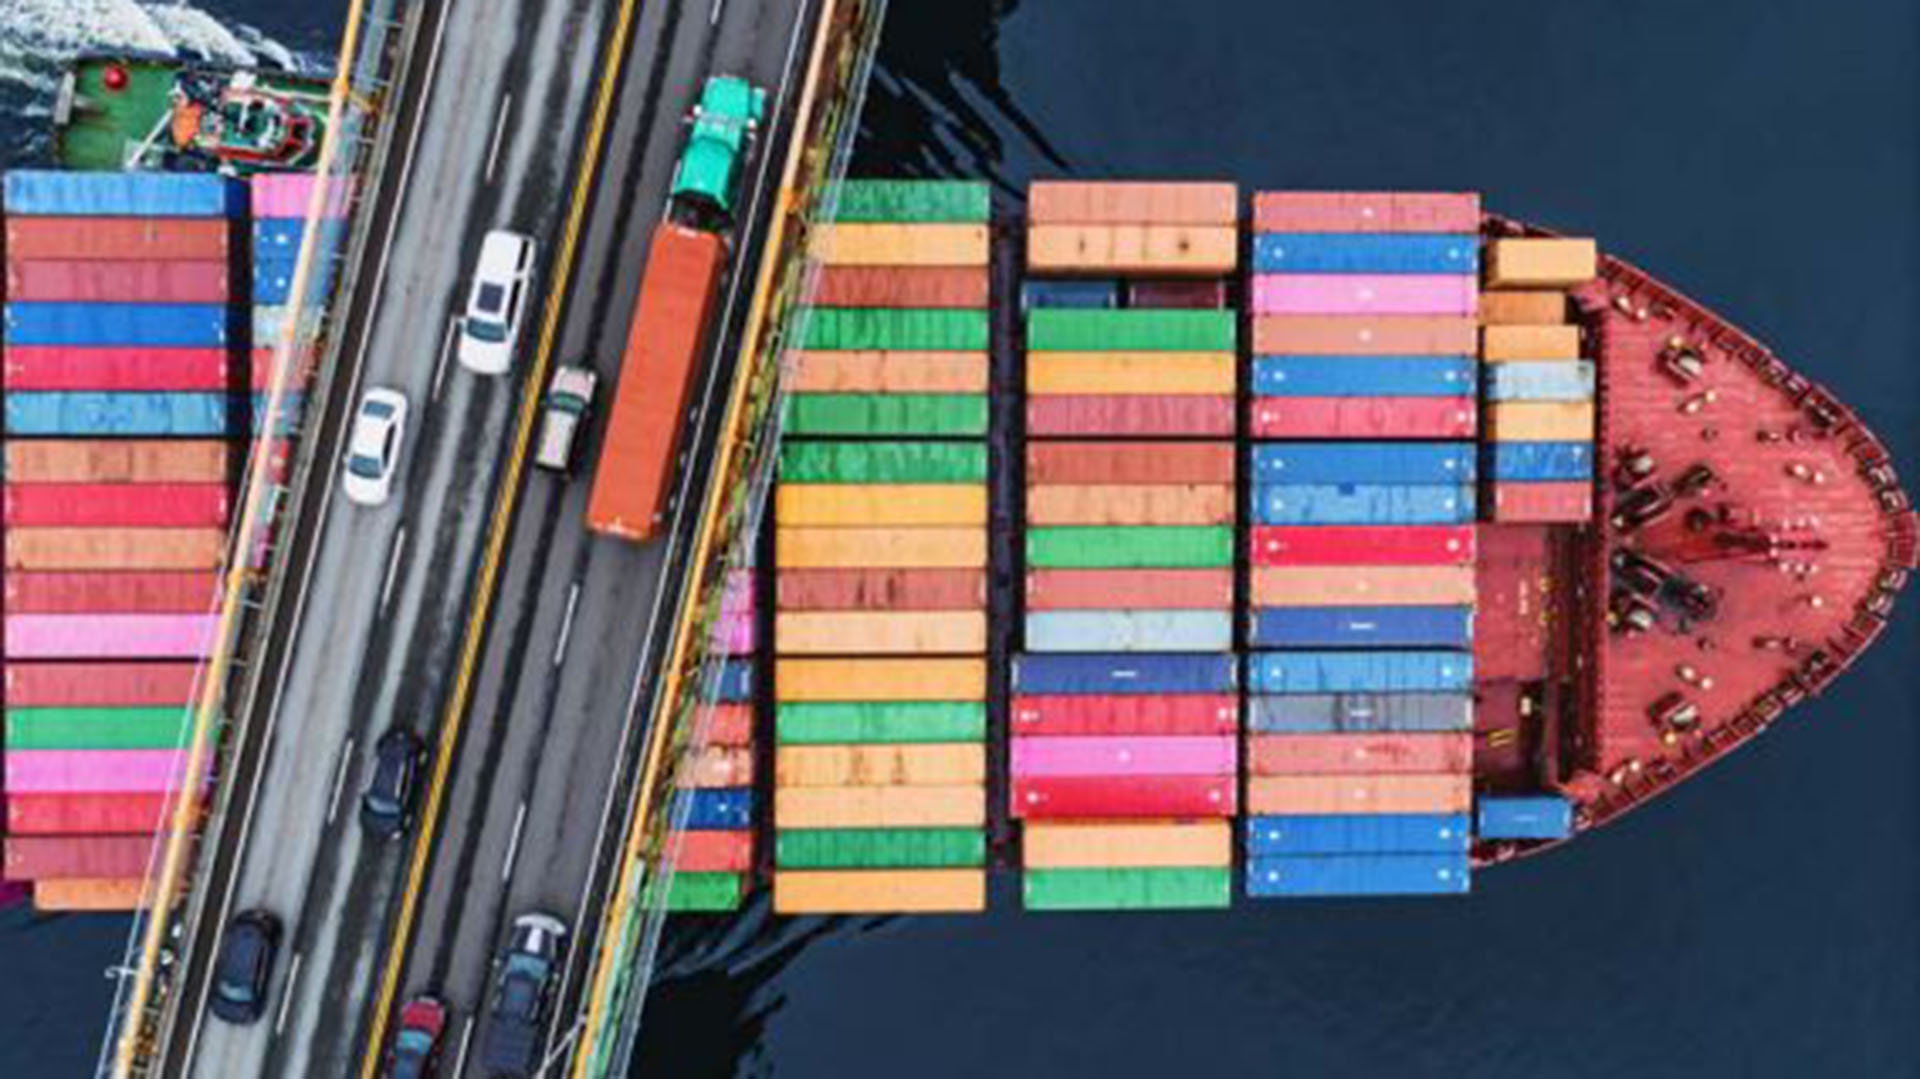 El informe de DHL muestra un buque portacontenedores cruzando un puente y permite dimensionar el peso del transporte marítimo en la "conectividad" mundial 